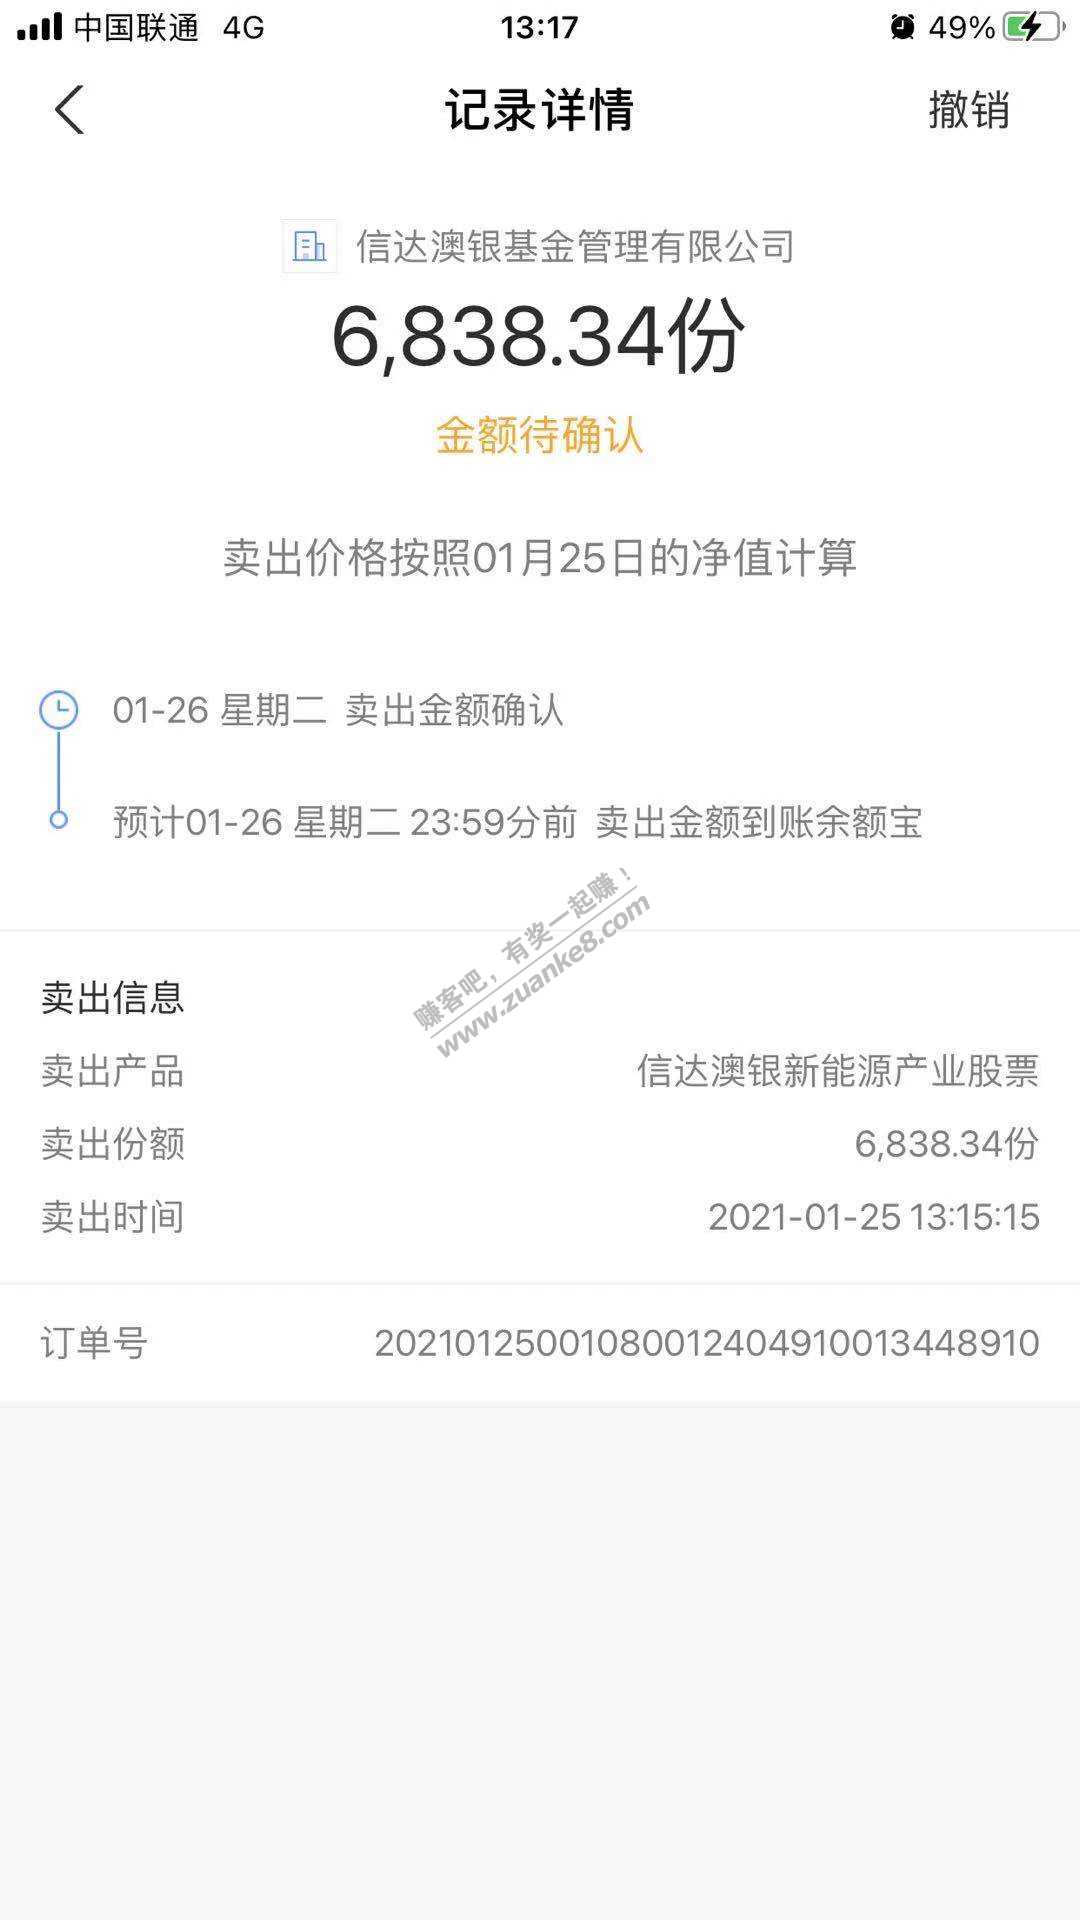 2021.1.25基金定投-惠小助(52huixz.com)